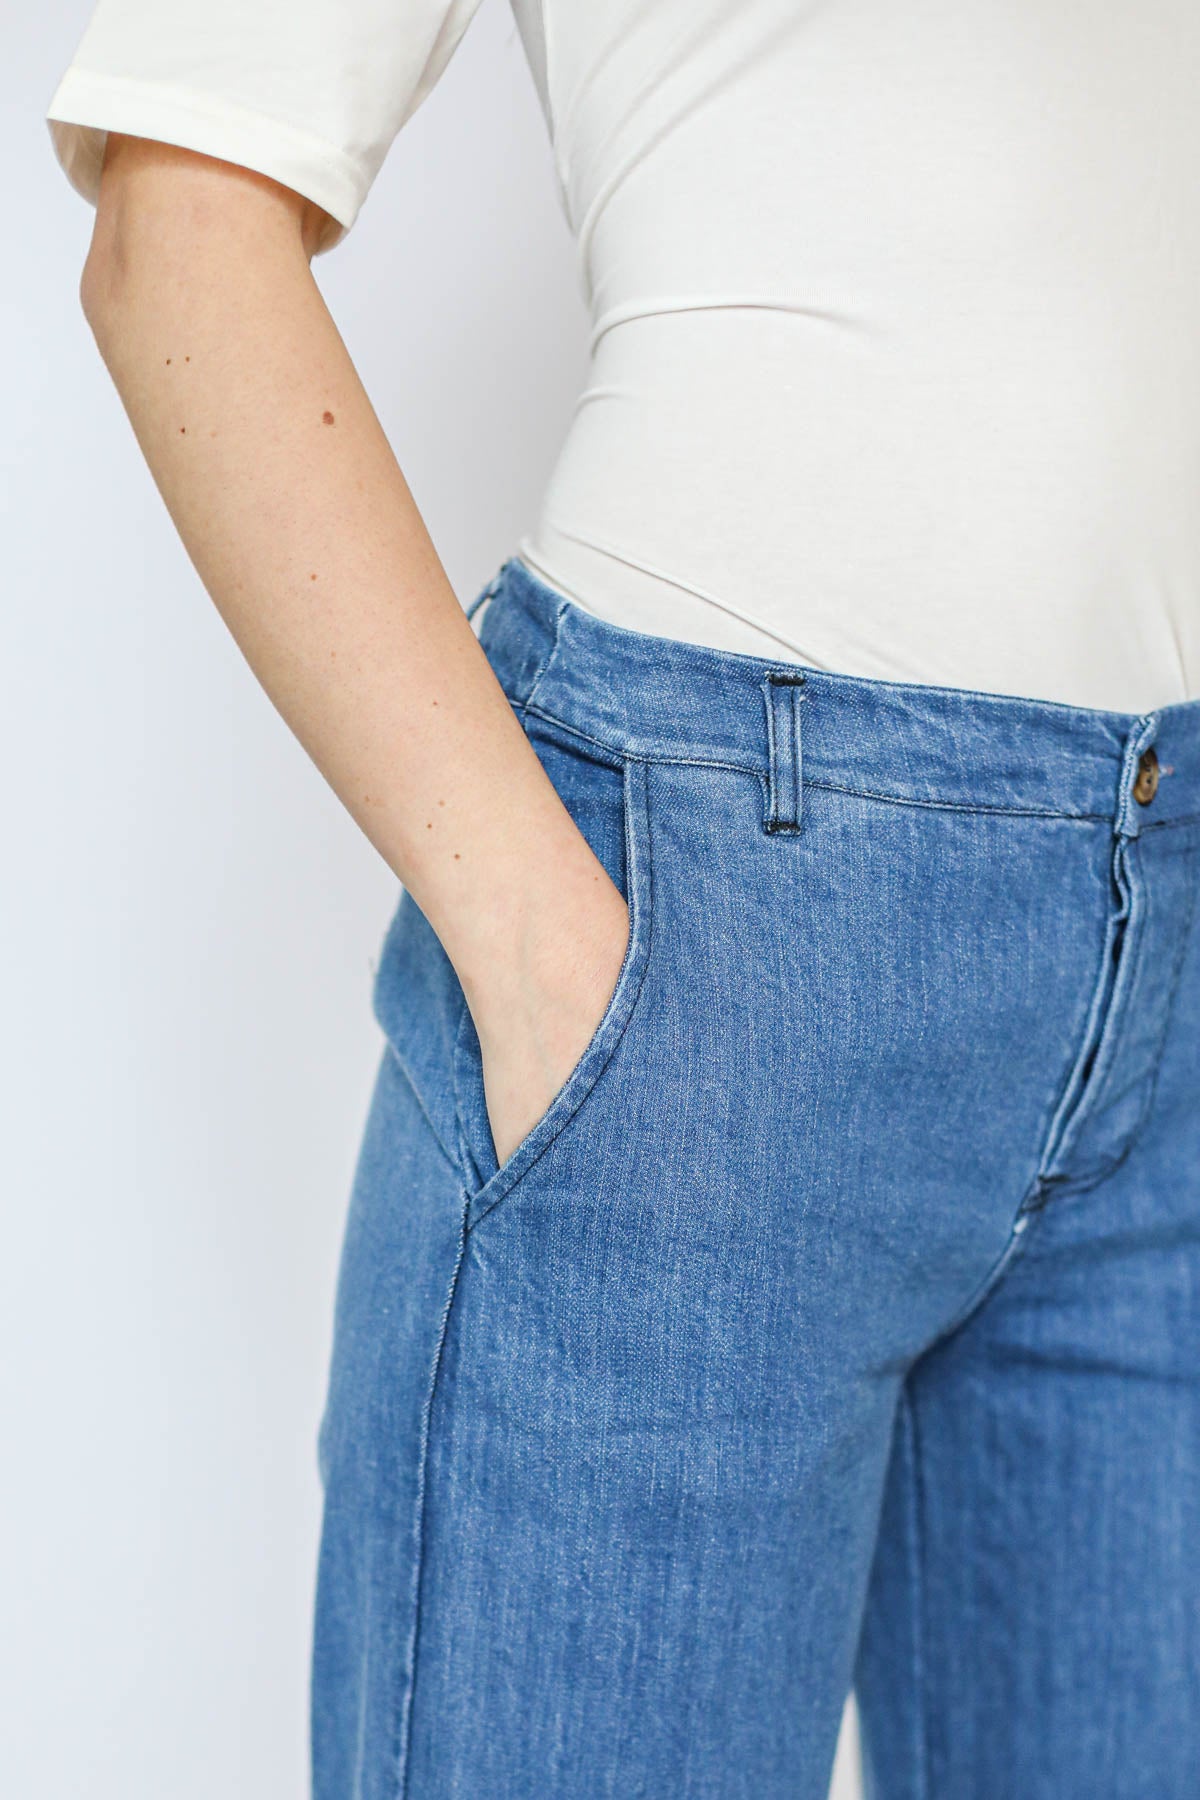 DISSOLVED LABS - jeans mia - JEANS CHIARO